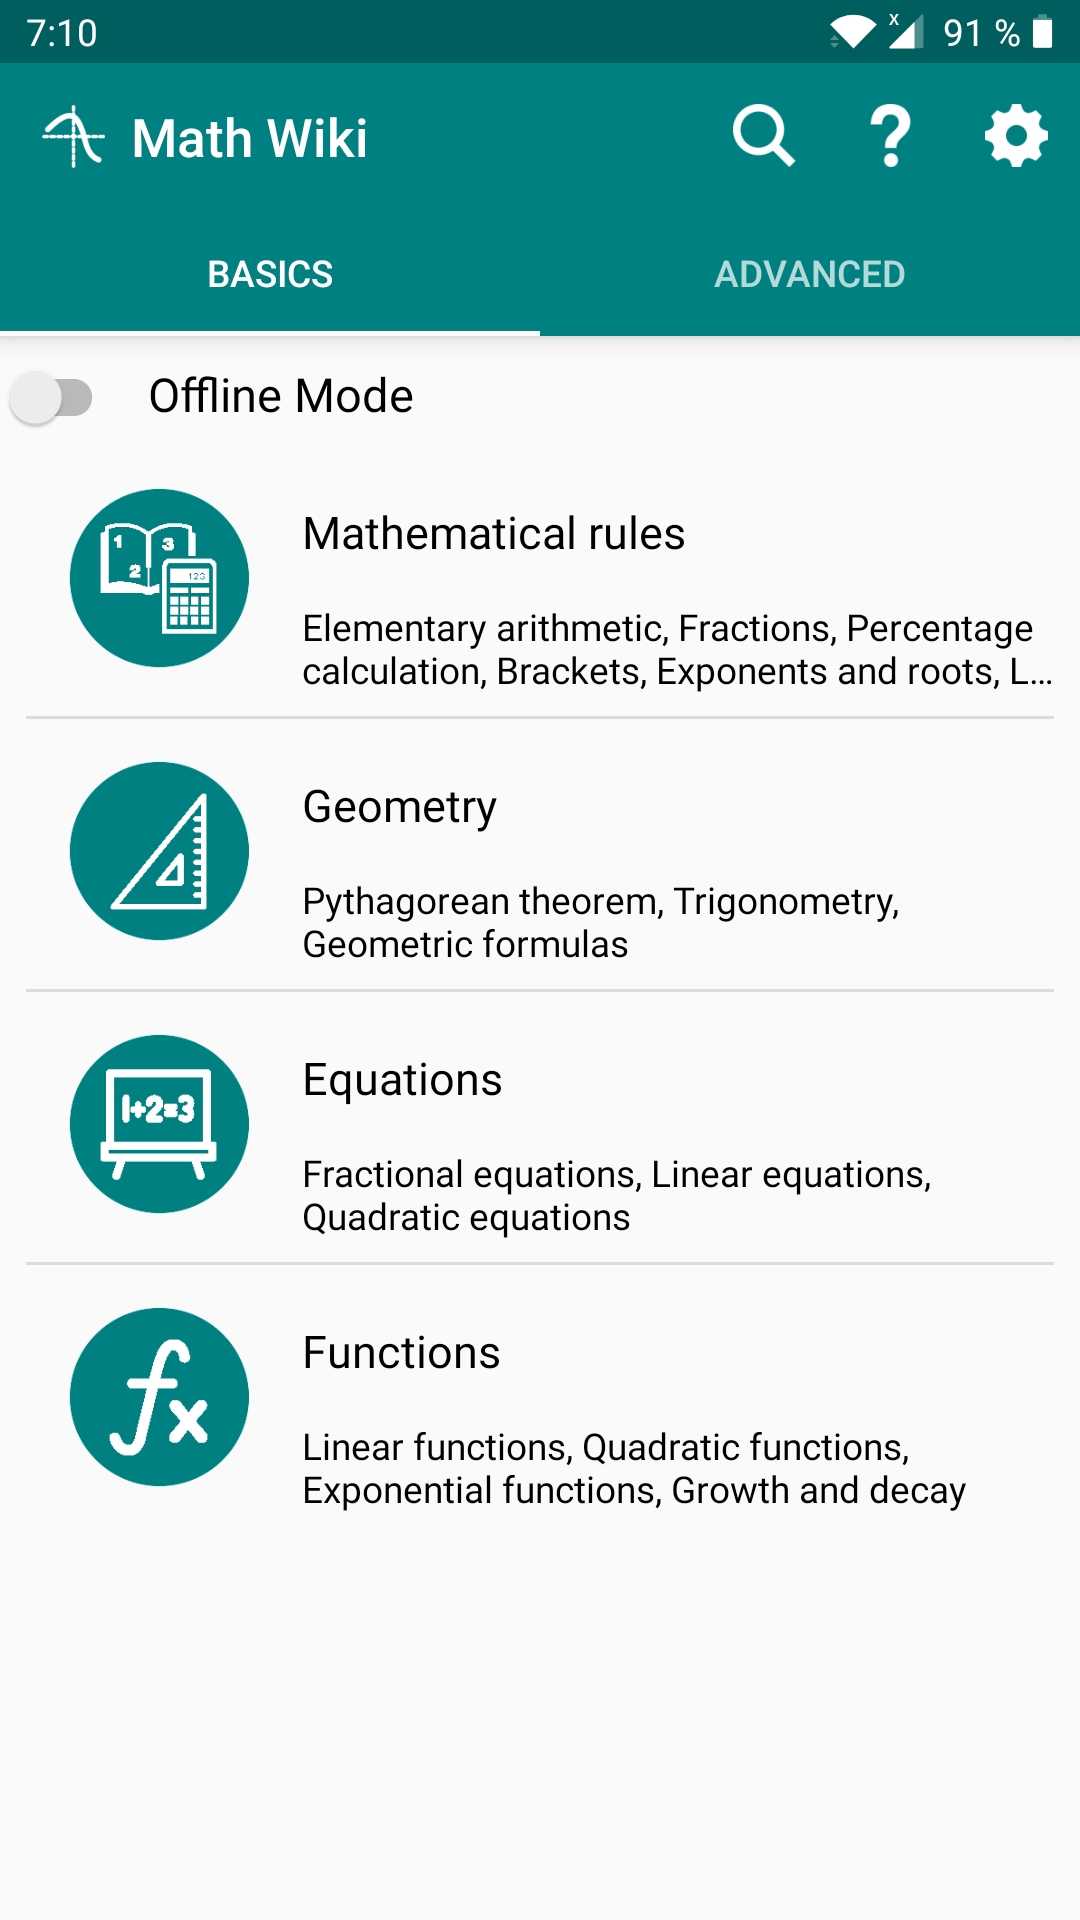 Math Wiki basic topics